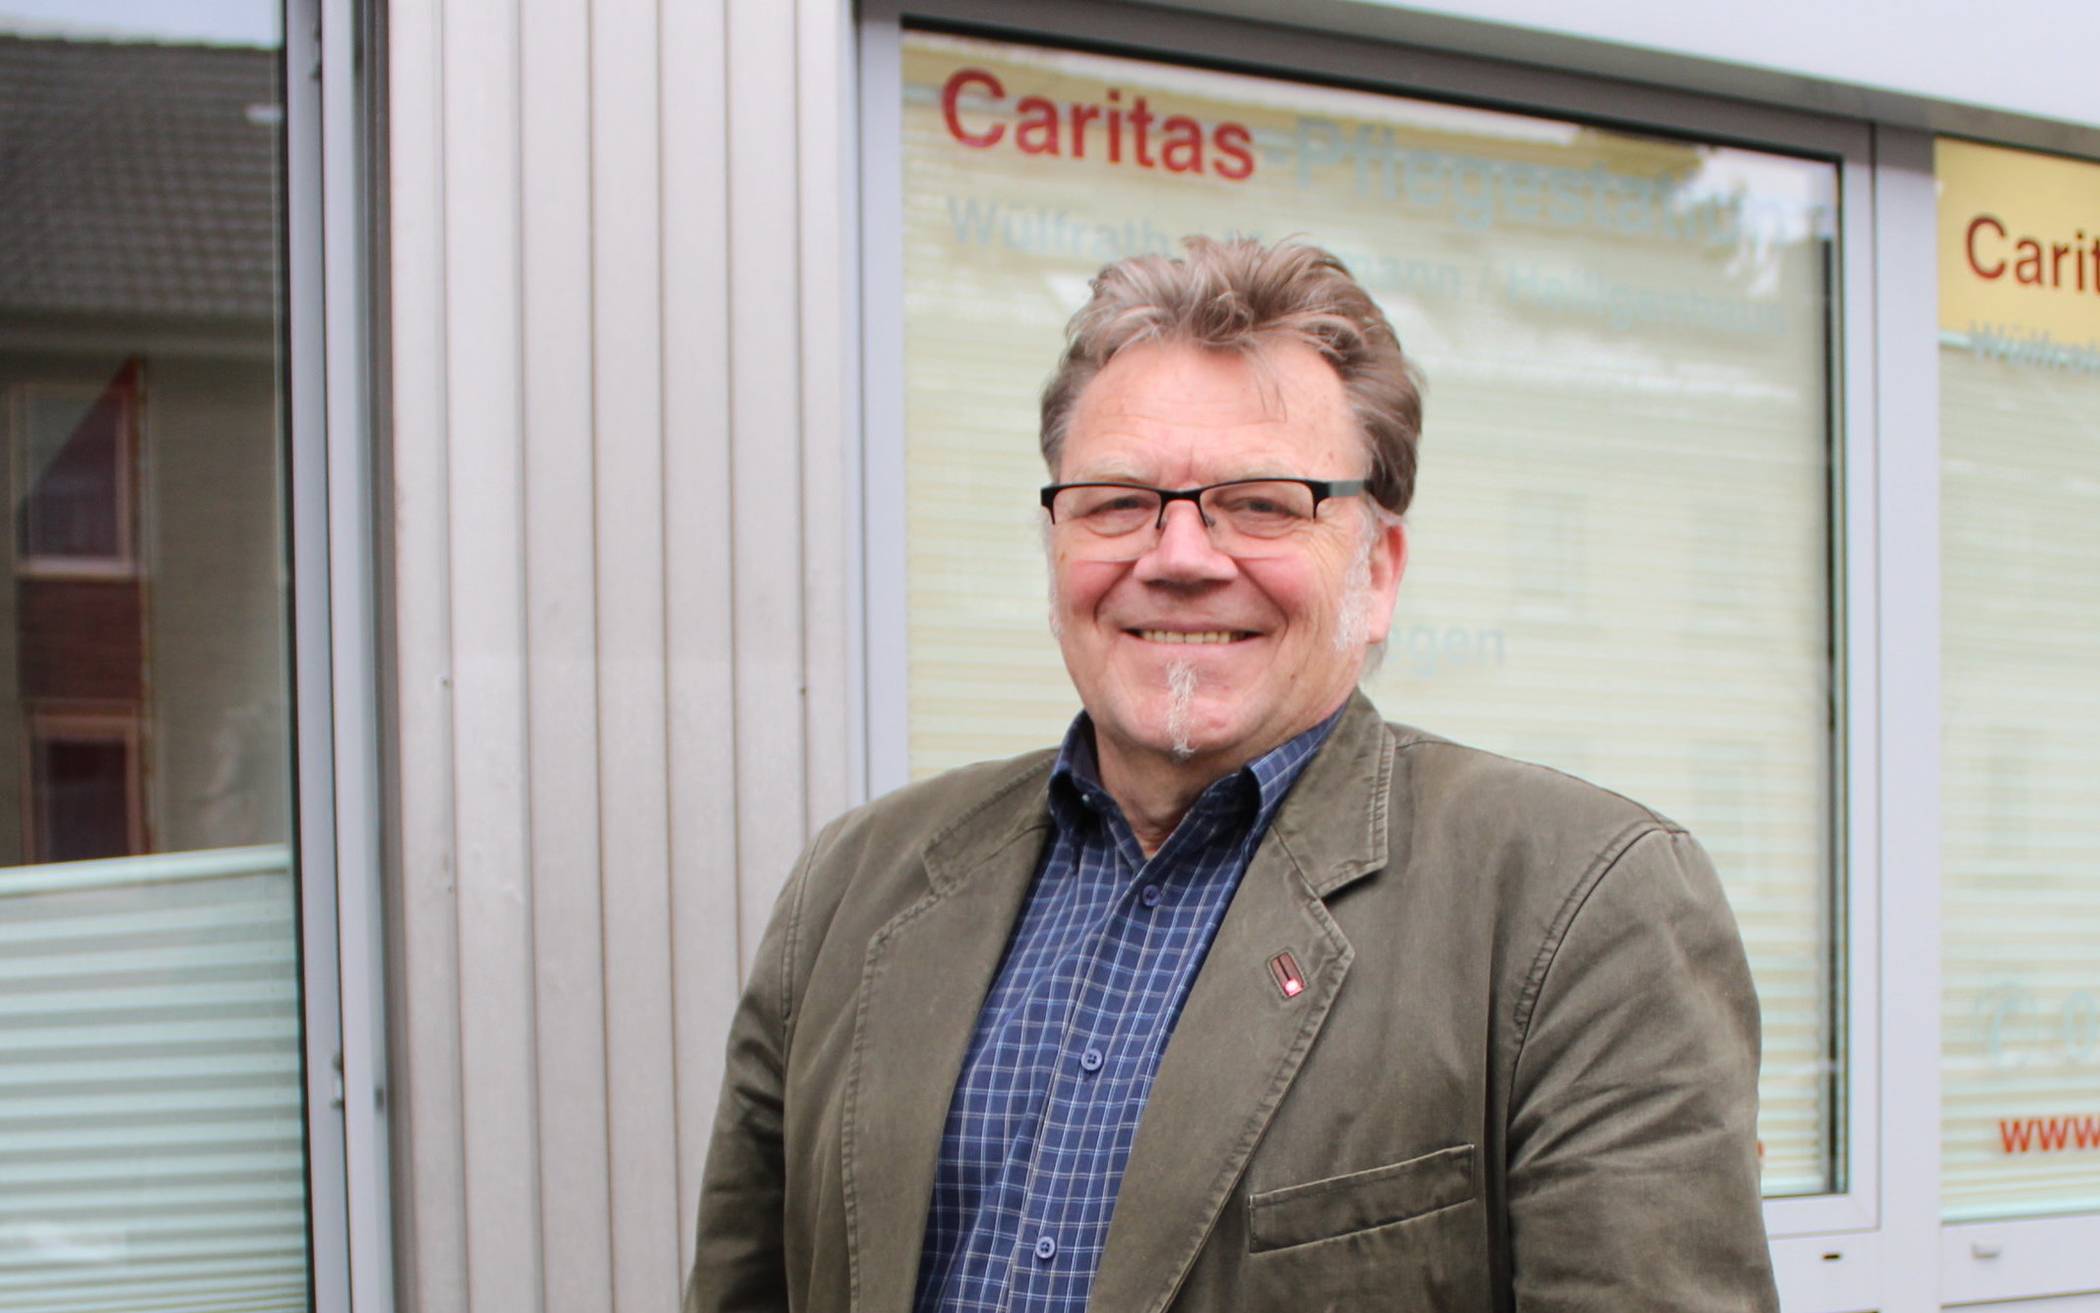  Diplom-Sozialpädagoge Thomas Rasch fungiert seit dem Jahr 2000 als Bereichsleiter der Caritas im Kreis Mettmann. Angefangen hat er 1990 in der Suchtberatungsstelle. 